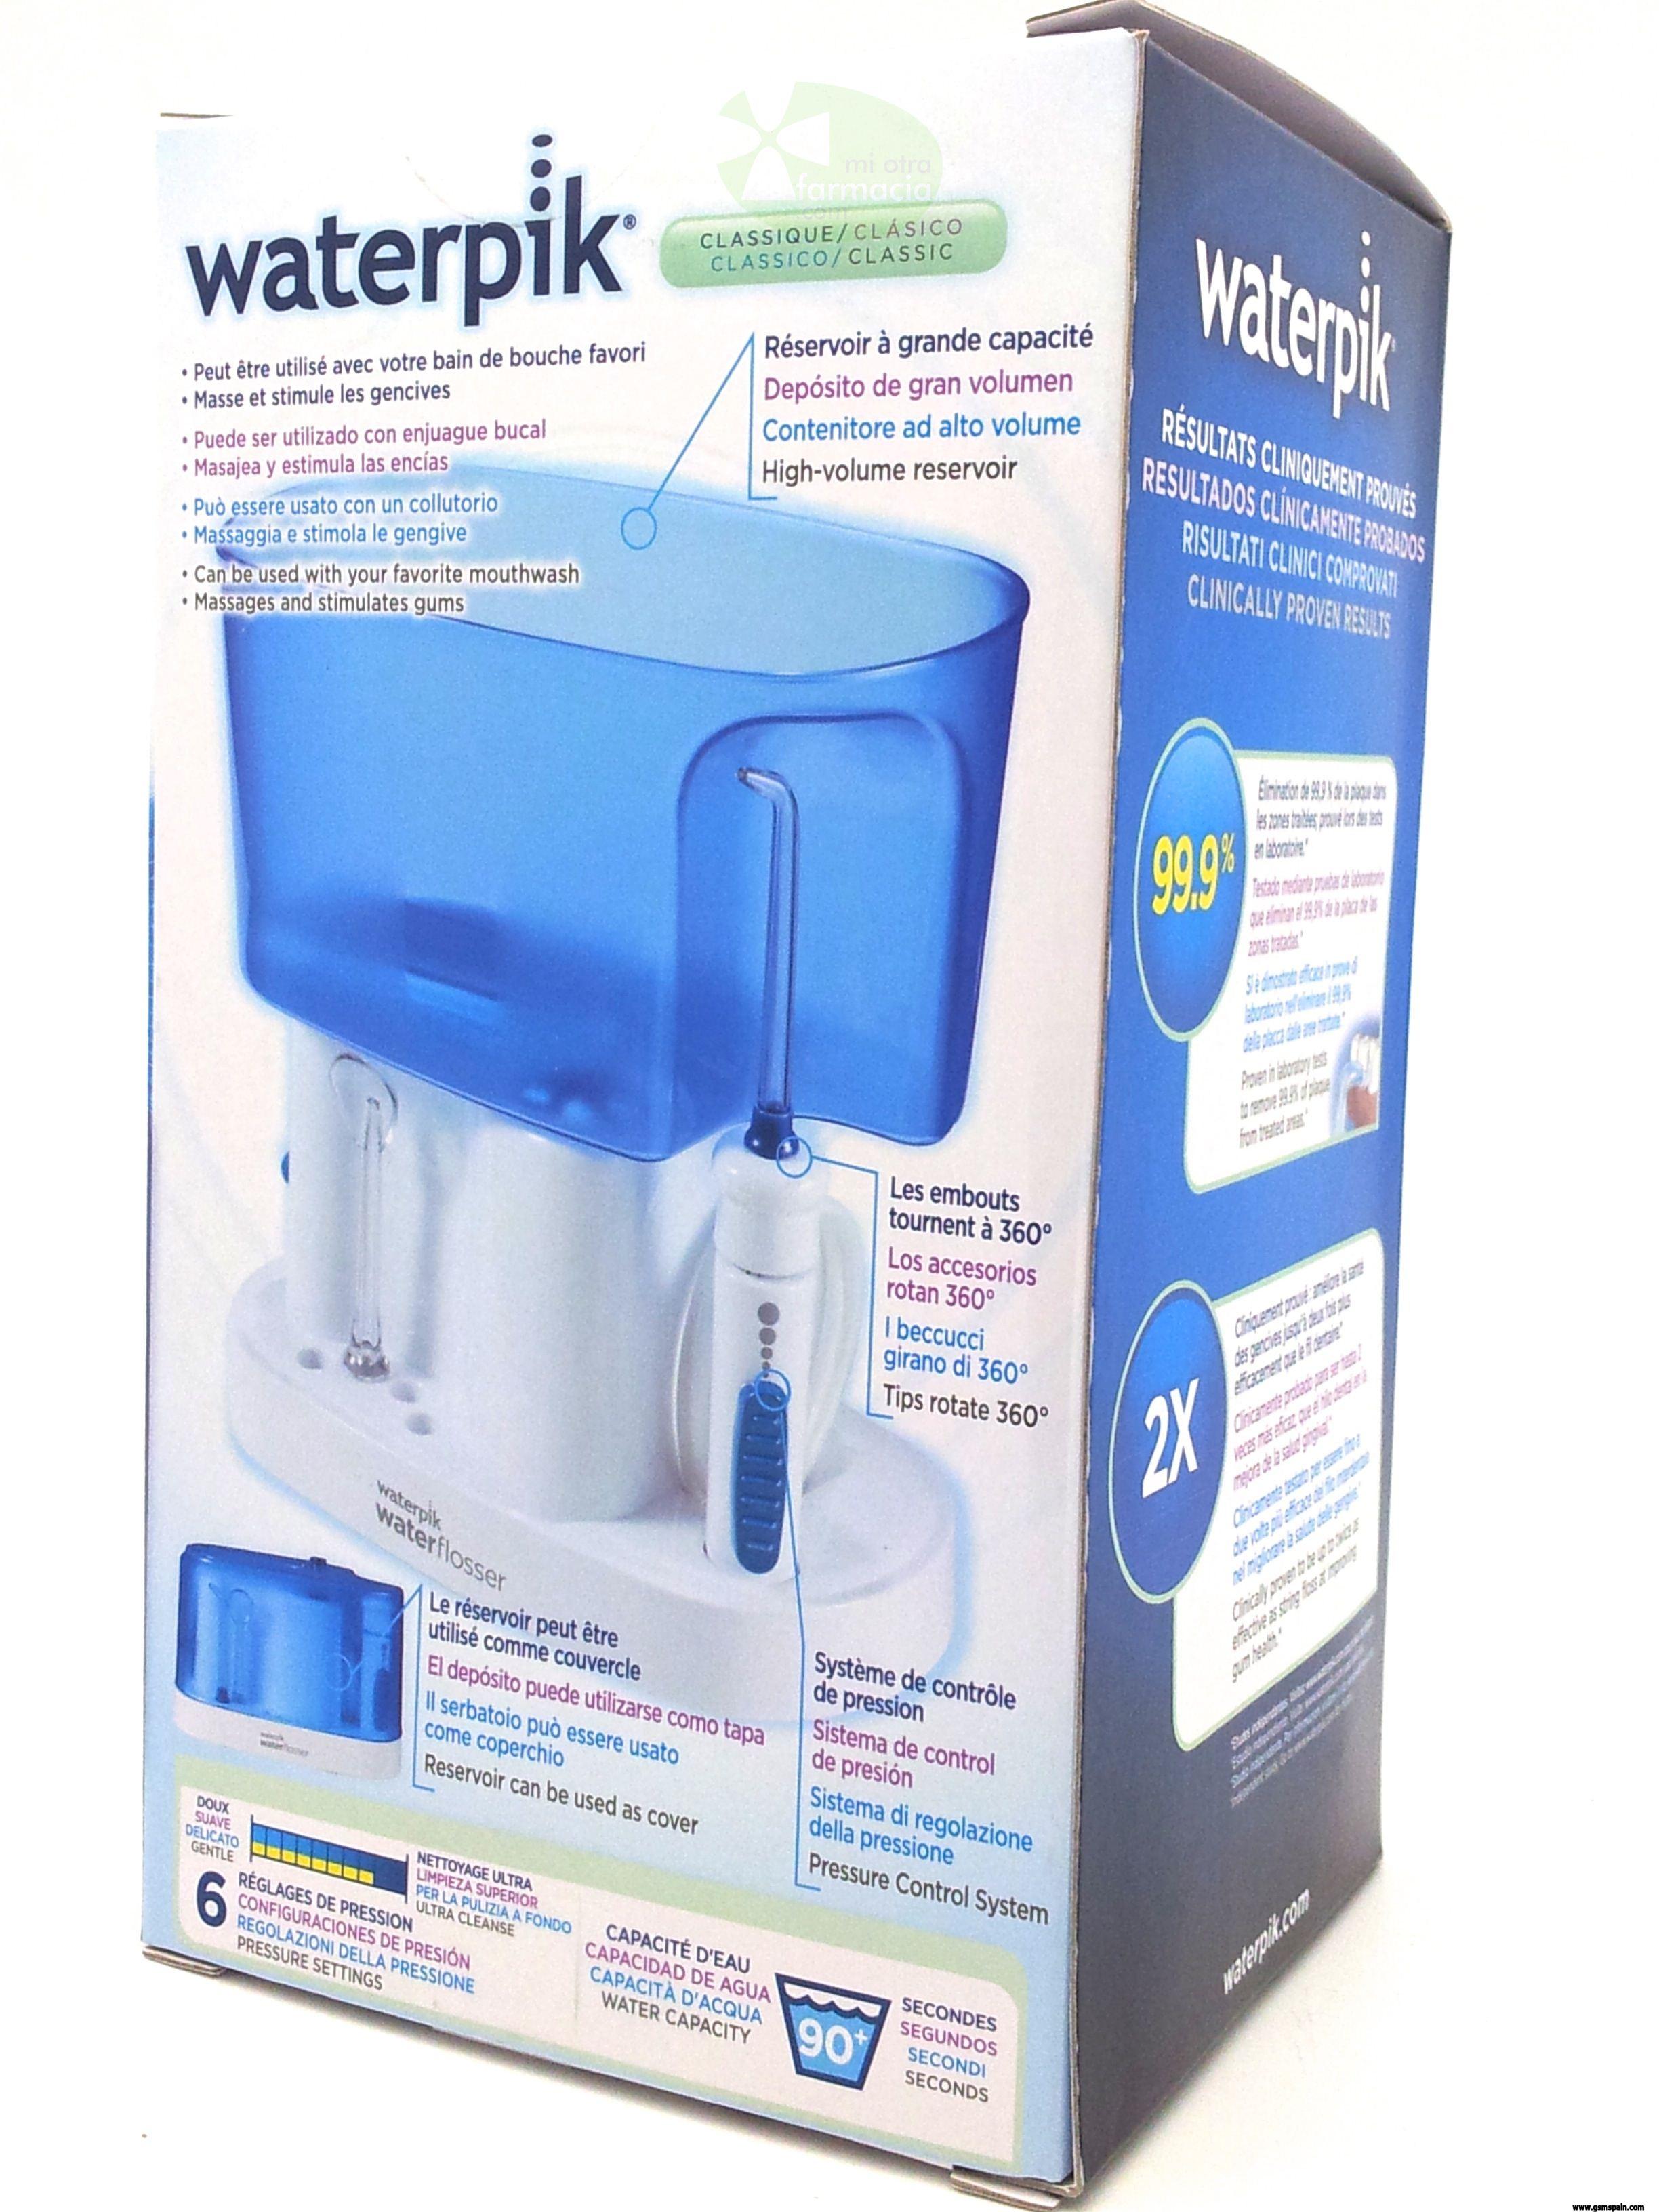 [VENDO] Waterpik Irrigador Clsico WP-70, Factura y 2 aos de garanta + regalos!!!